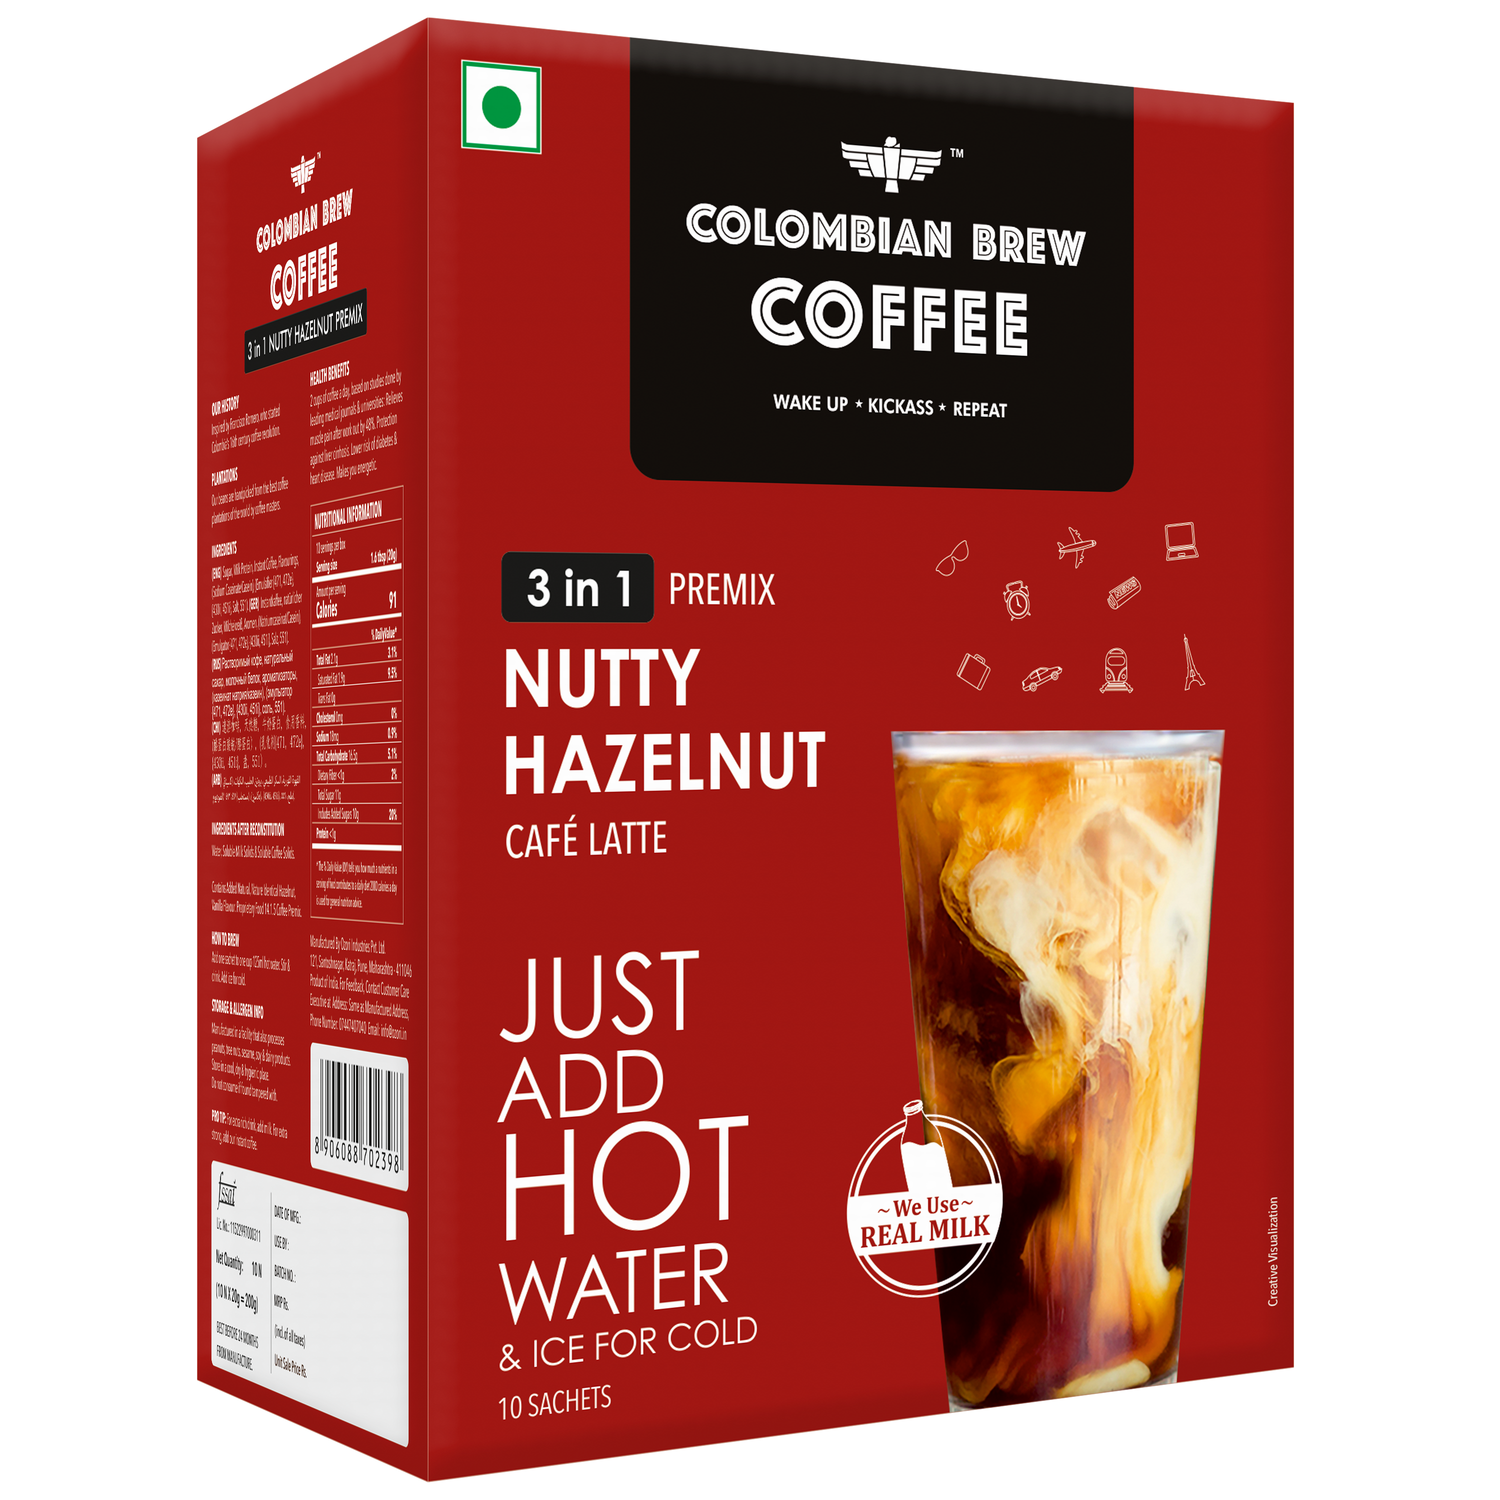 Hazelnut Café Latte, Instant Coffee Powder Premix (3 in 1), 10 Sachets Box 